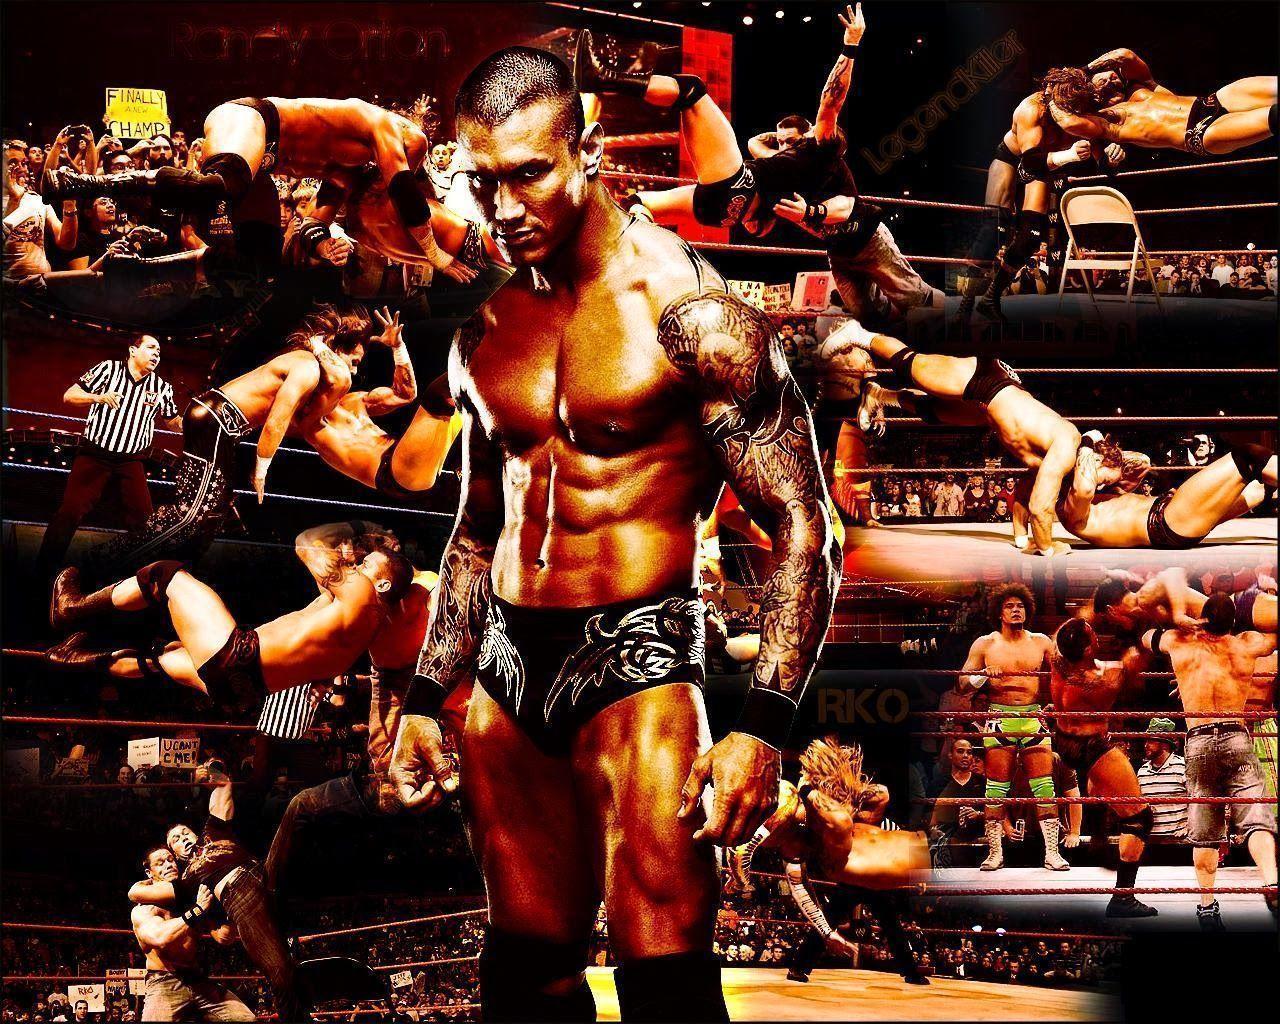 WWE Wallpaper HD 2015